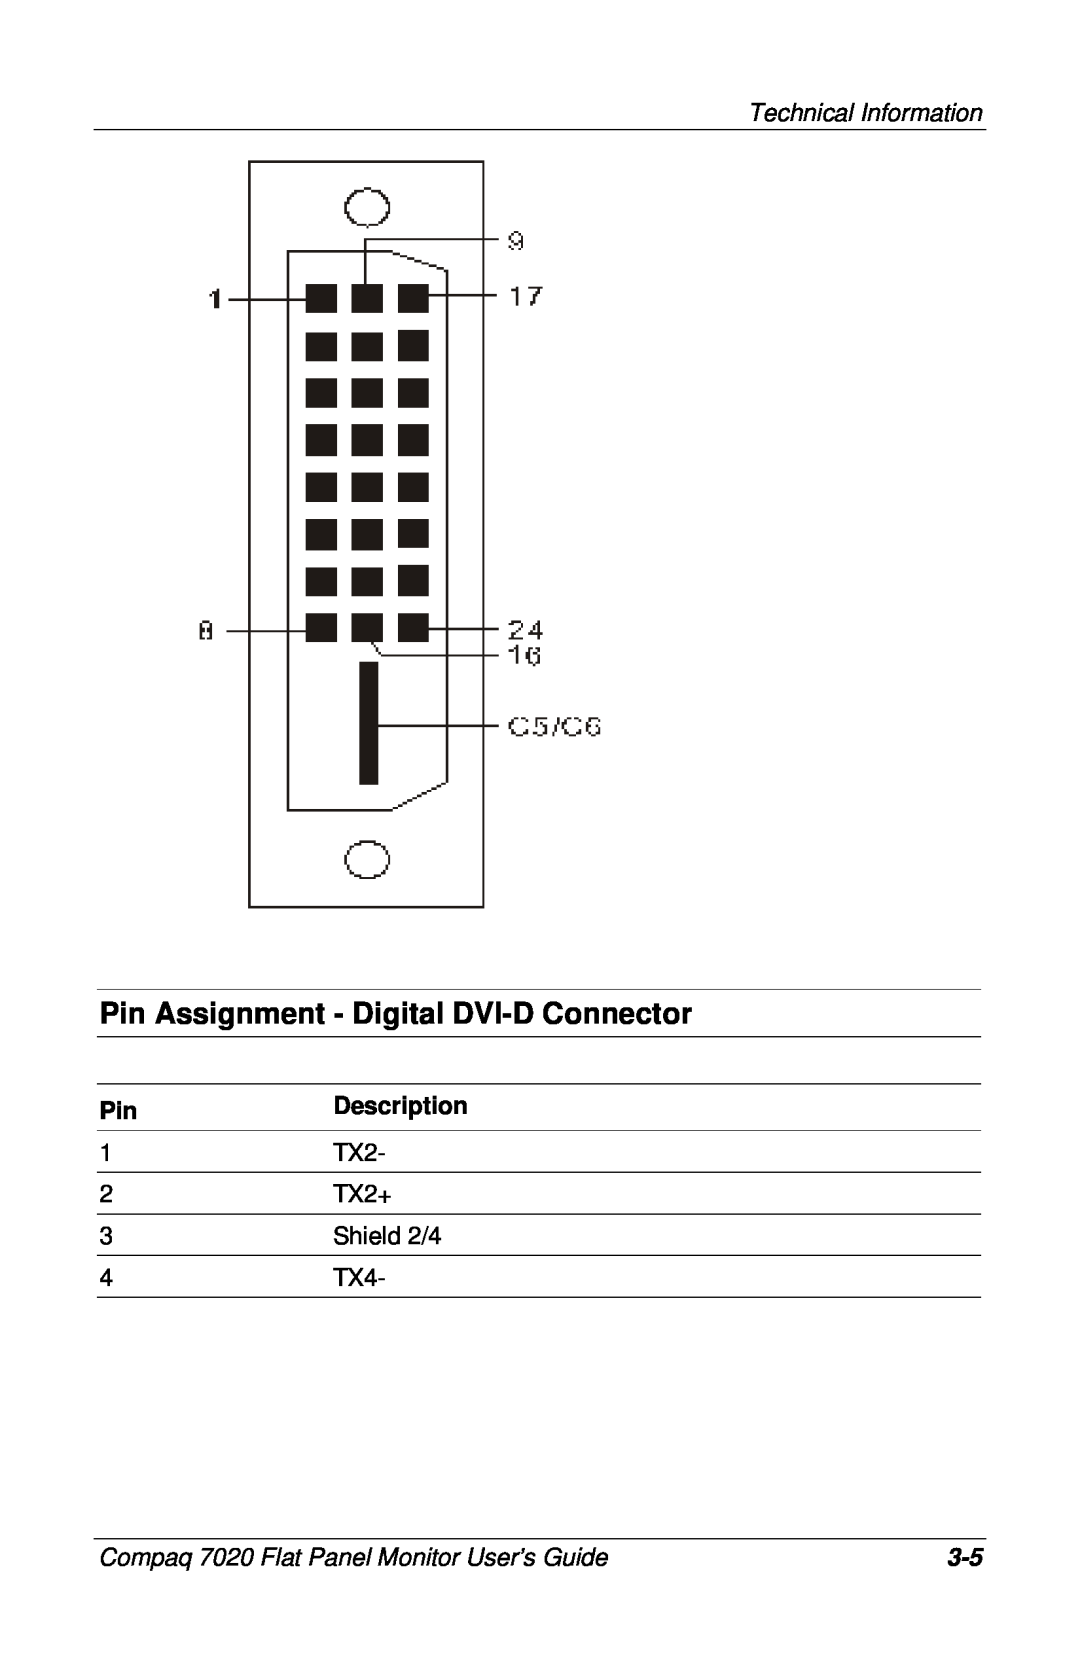 Compaq 7020 manual Pin Assignment - Digital DVI-D Connector, Technical Information, Description, TX2+, Shield 2/4 